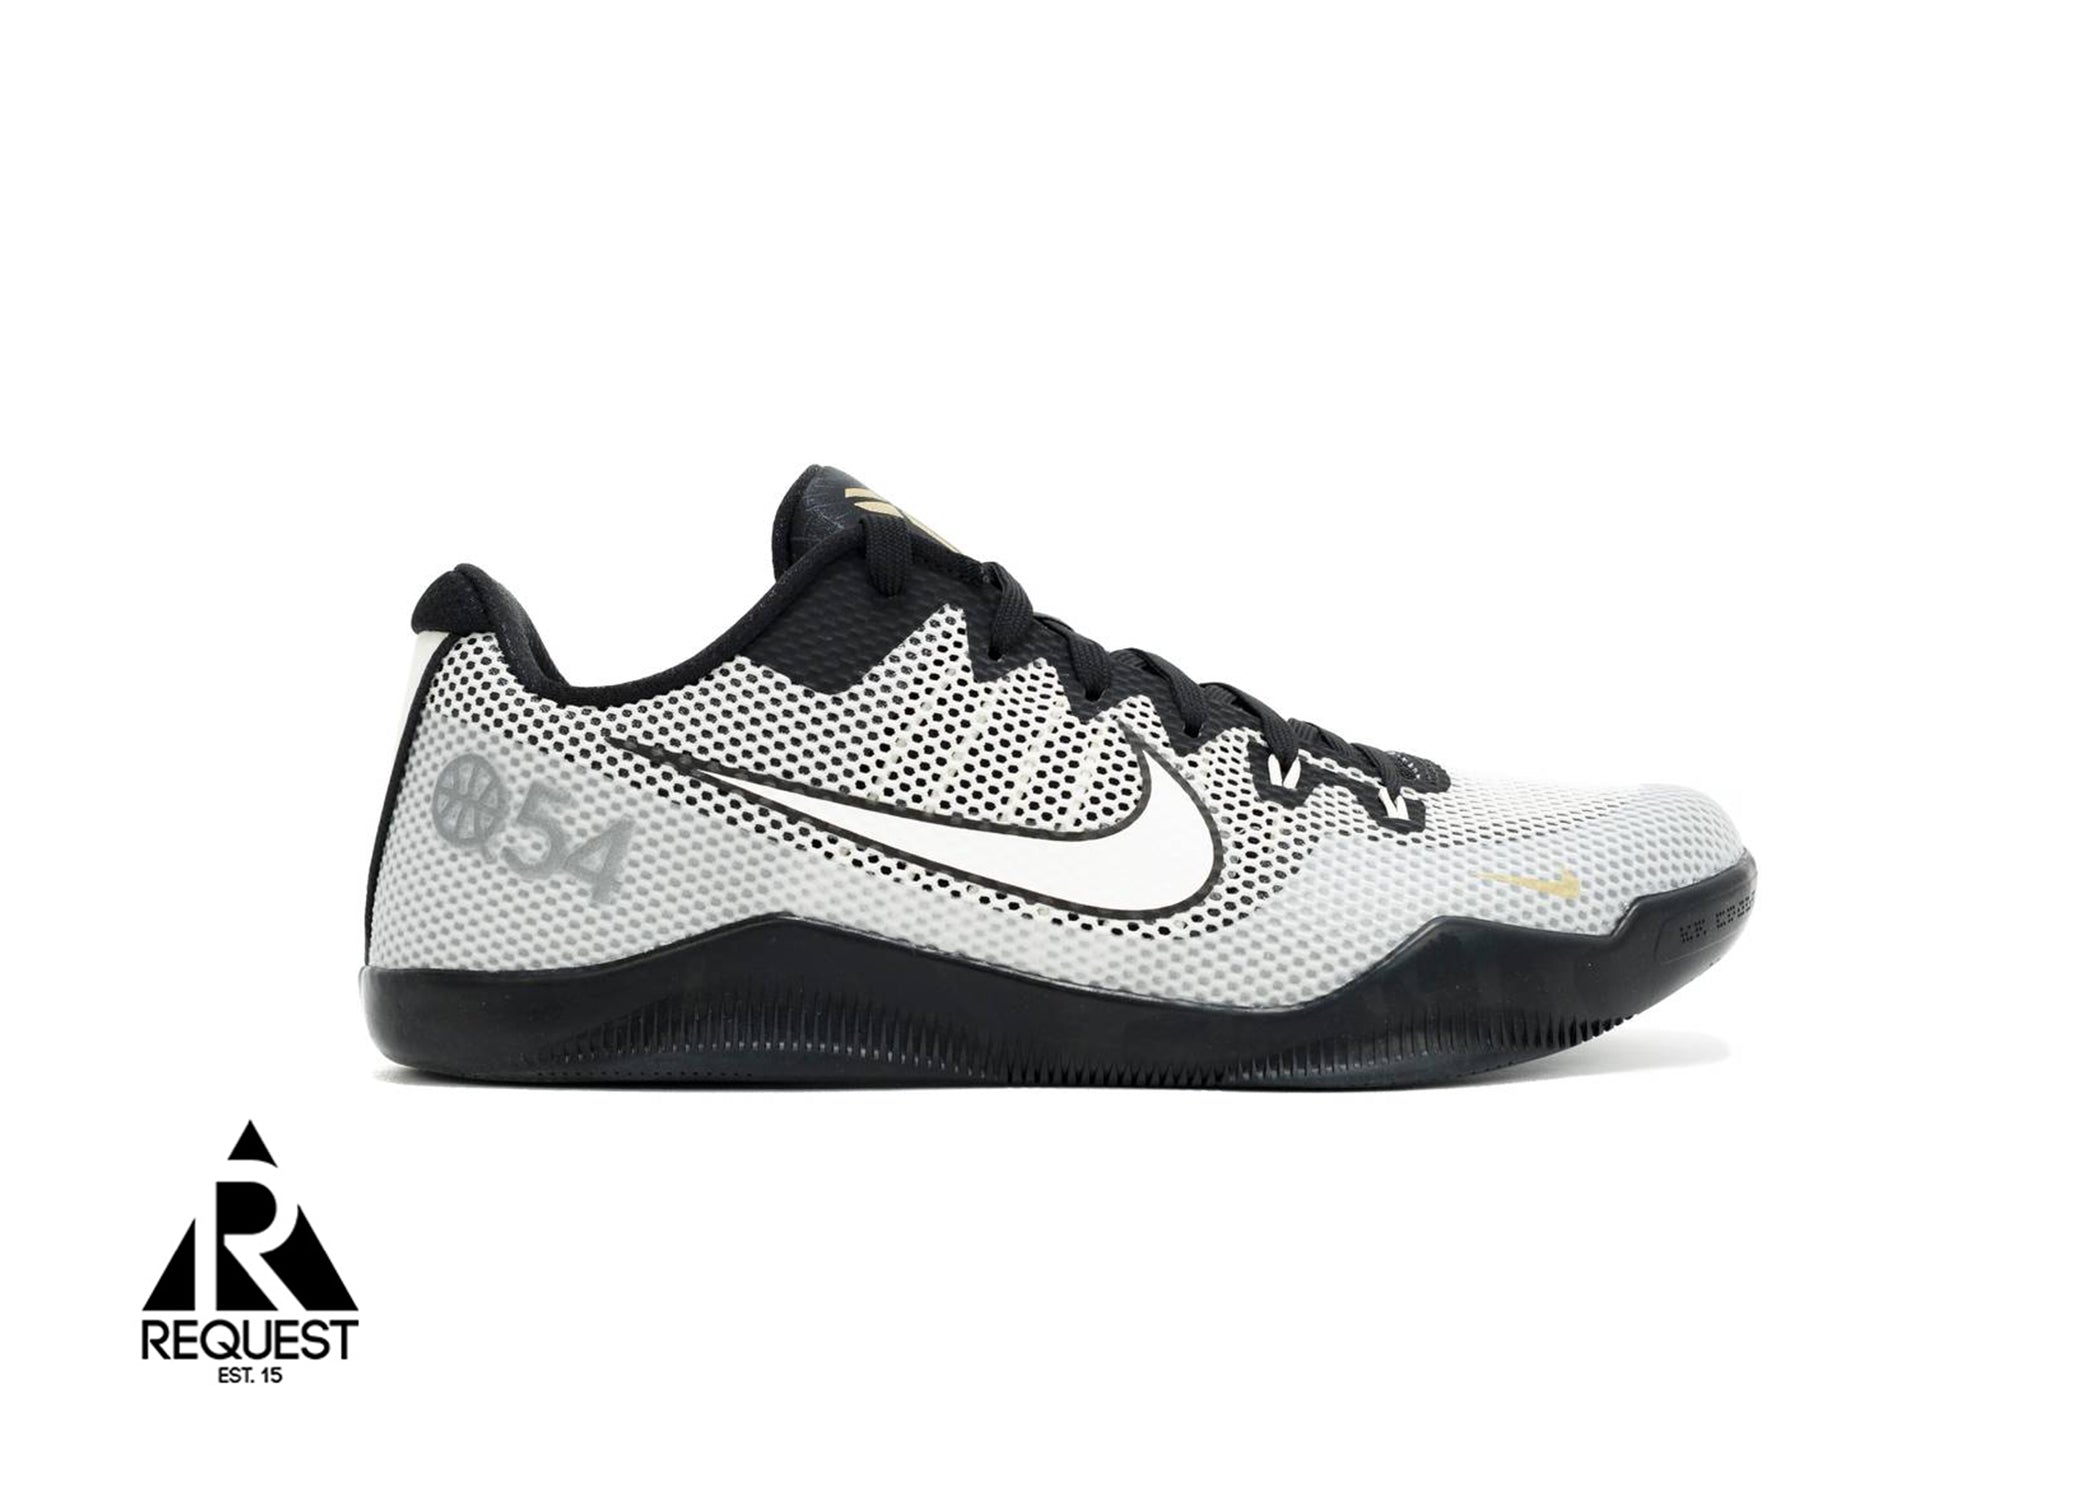 Nike Kobe 11 "Quai 54"